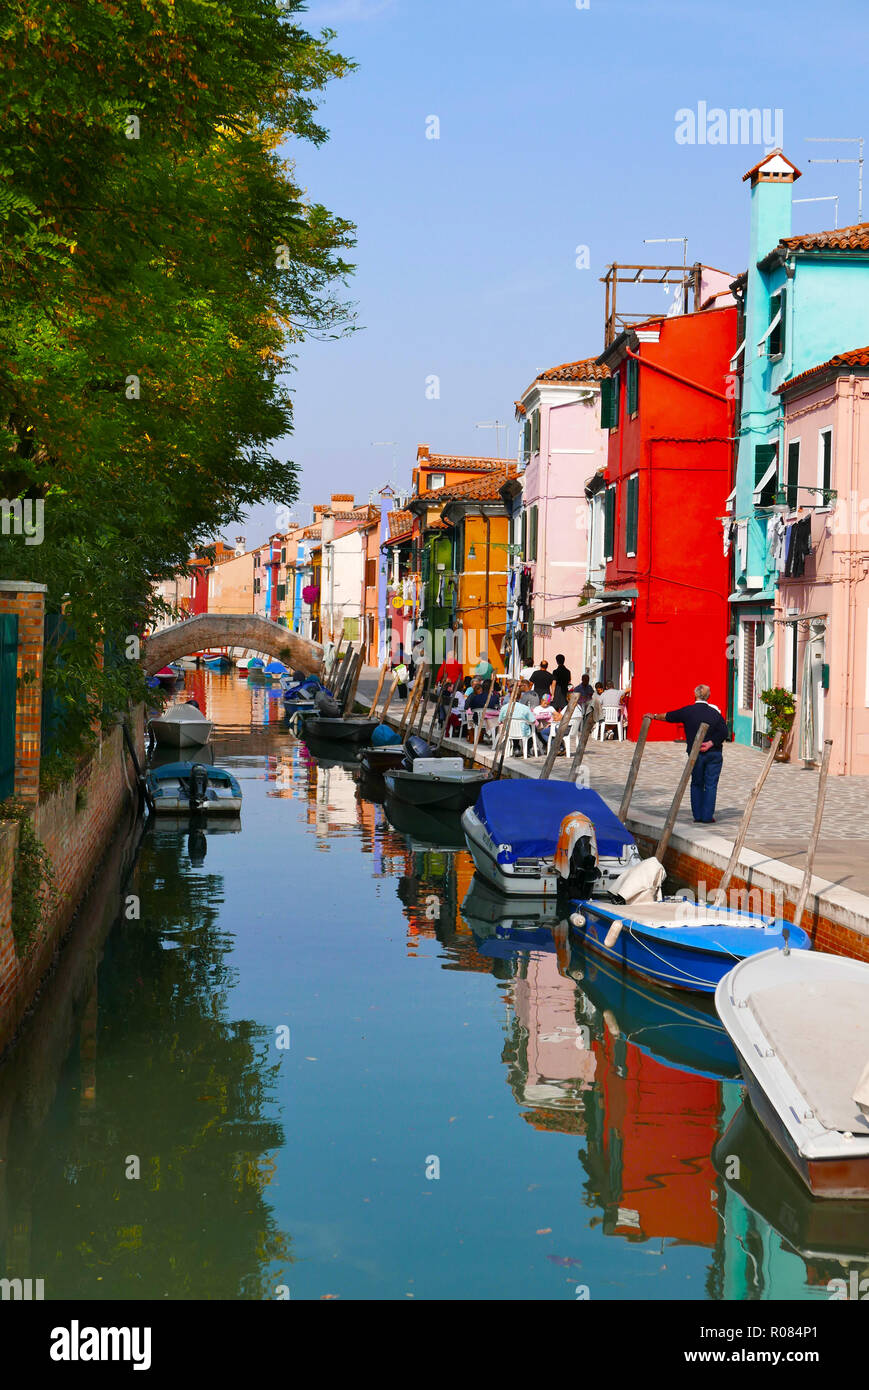 Vue sur le canal de la maisons peintes de couleurs vives sur l'île de Burano, dans la lagune de Venise Italie Banque D'Images